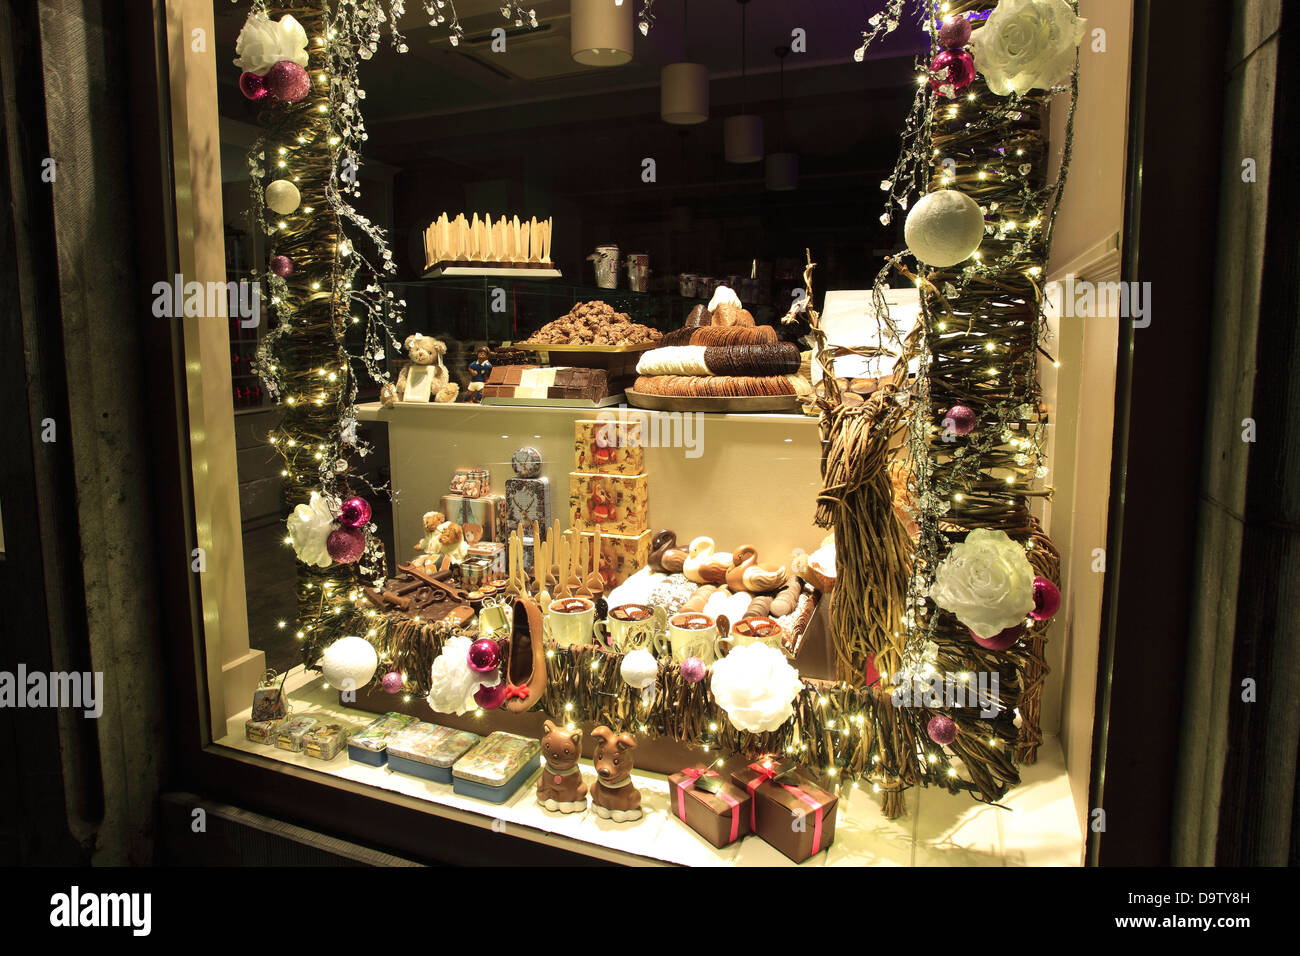 Affichage de vitrine chocolat belge à l'époque de Noël, place du marché, la ville de Bruges, Flandre occidentale, Belgique Banque D'Images